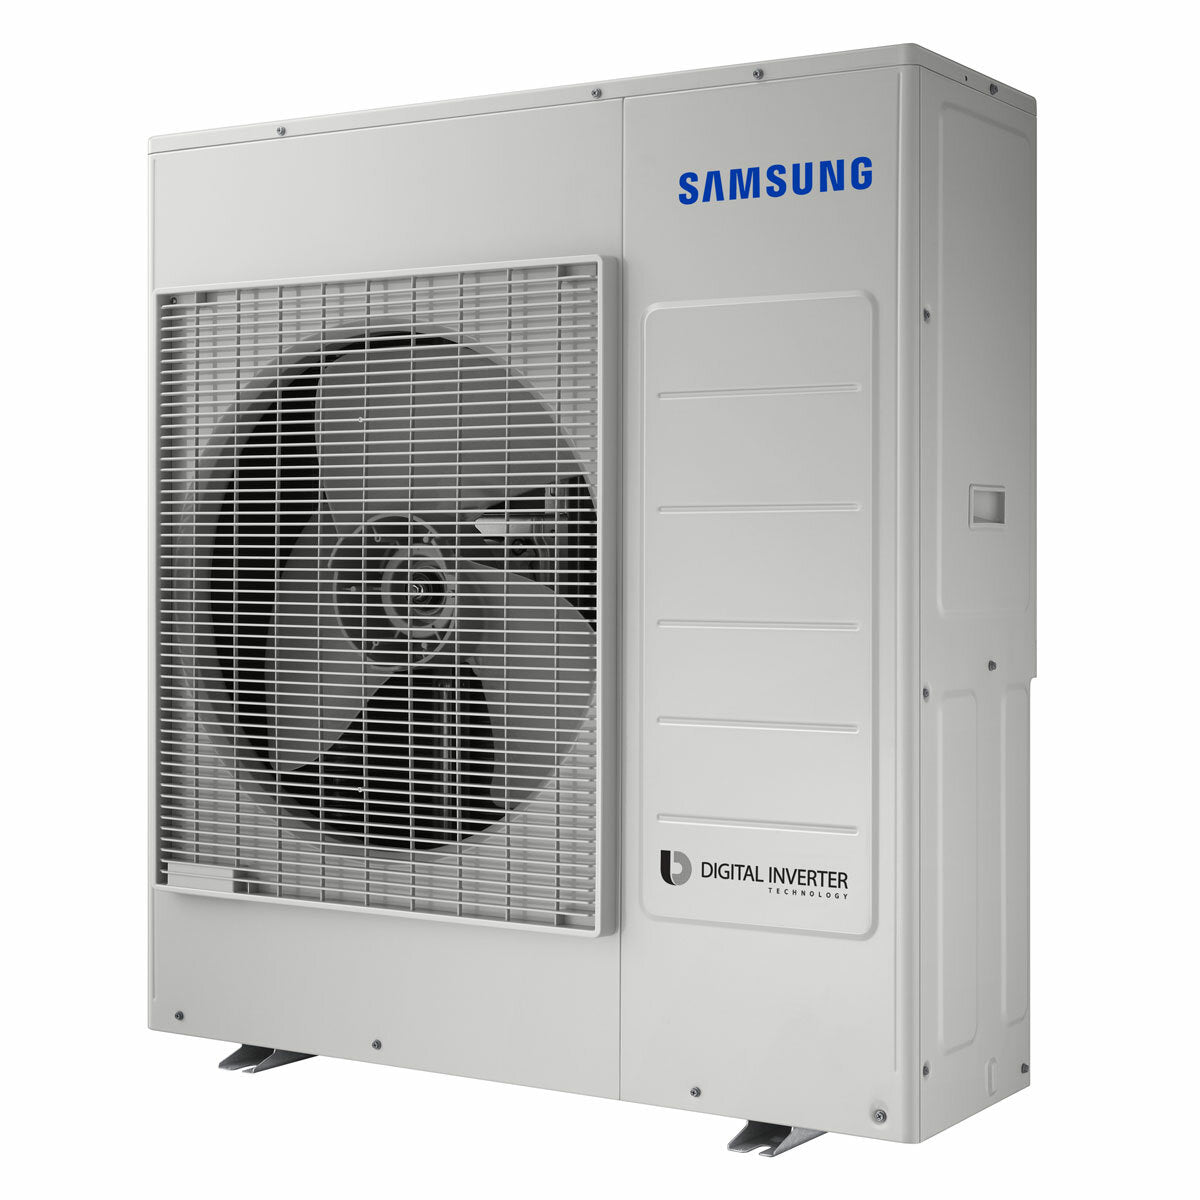 Samsung windfree Klimaanlage Avant Penta Split 7000 + 9000 + 9000 + 9000 + 9000 BTU Inverter A++ WLAN Außengerät 10,0 kW